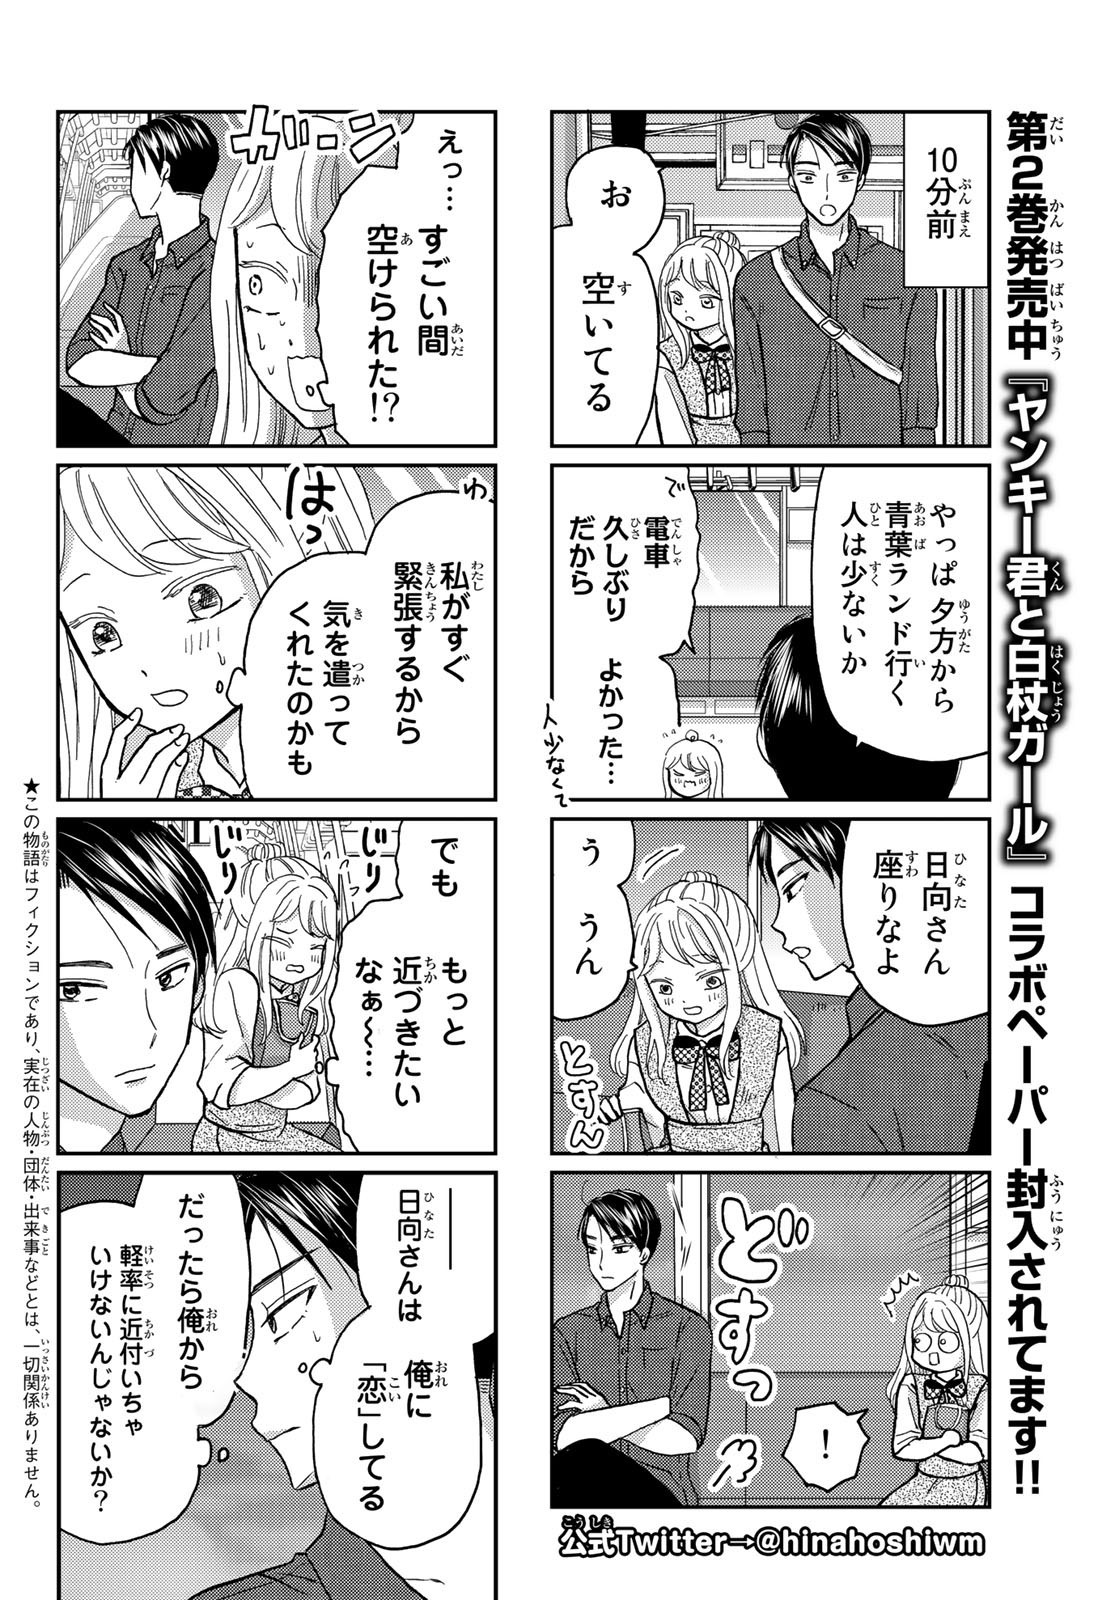 Hinata-san, Hoshino desu. - Chapter 032 - Page 2